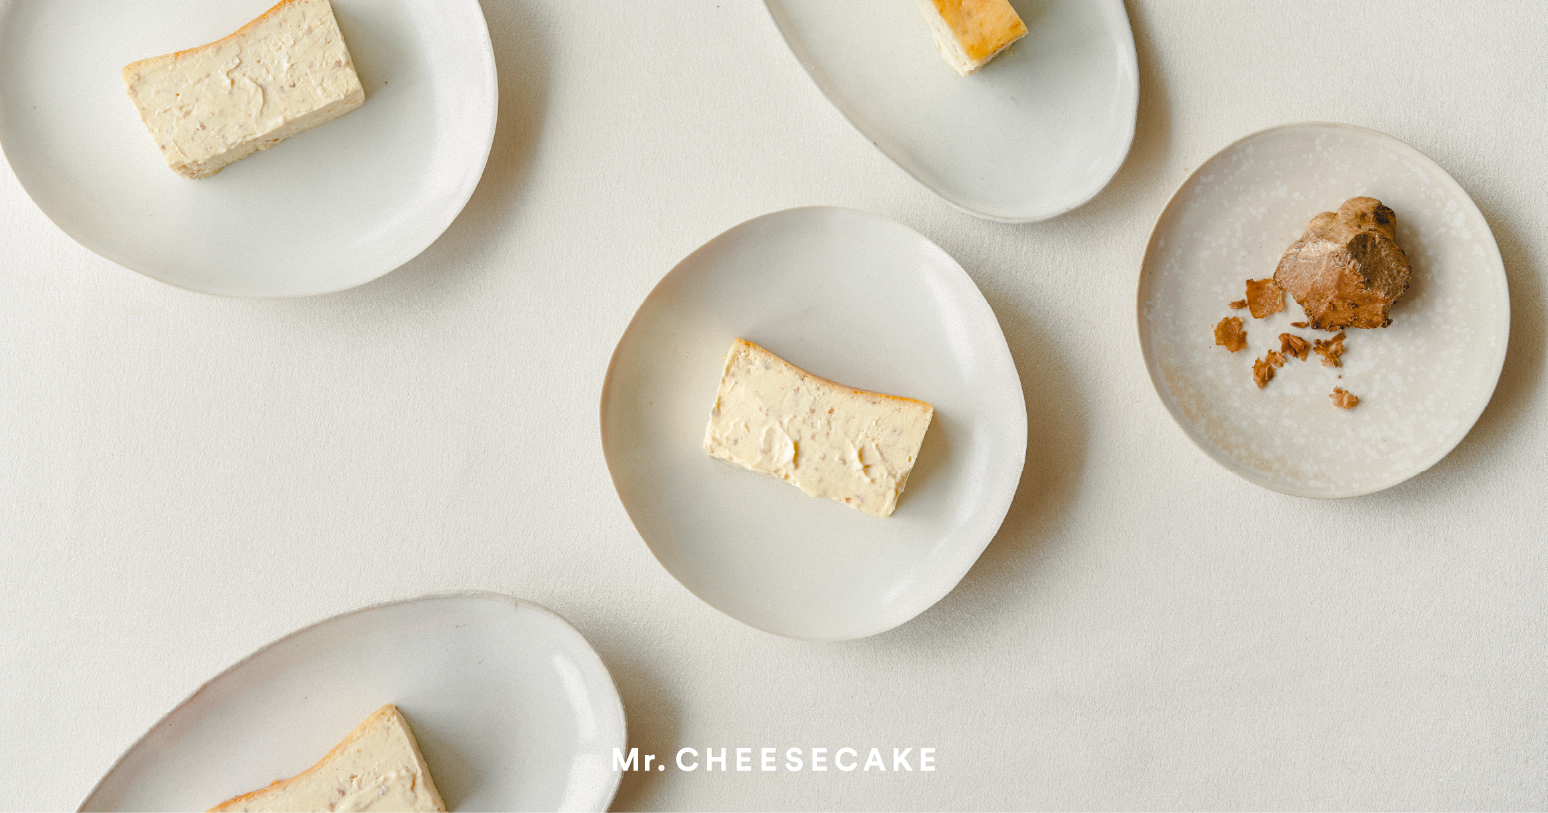 「Mr. CHEESECAKE」から、秋の深まる今が旬の高級食材“白トリュフ”を1本に10gも使用した高級フレーバー「Mr. CHEESECAKE white truffle」が登場のサブ画像1